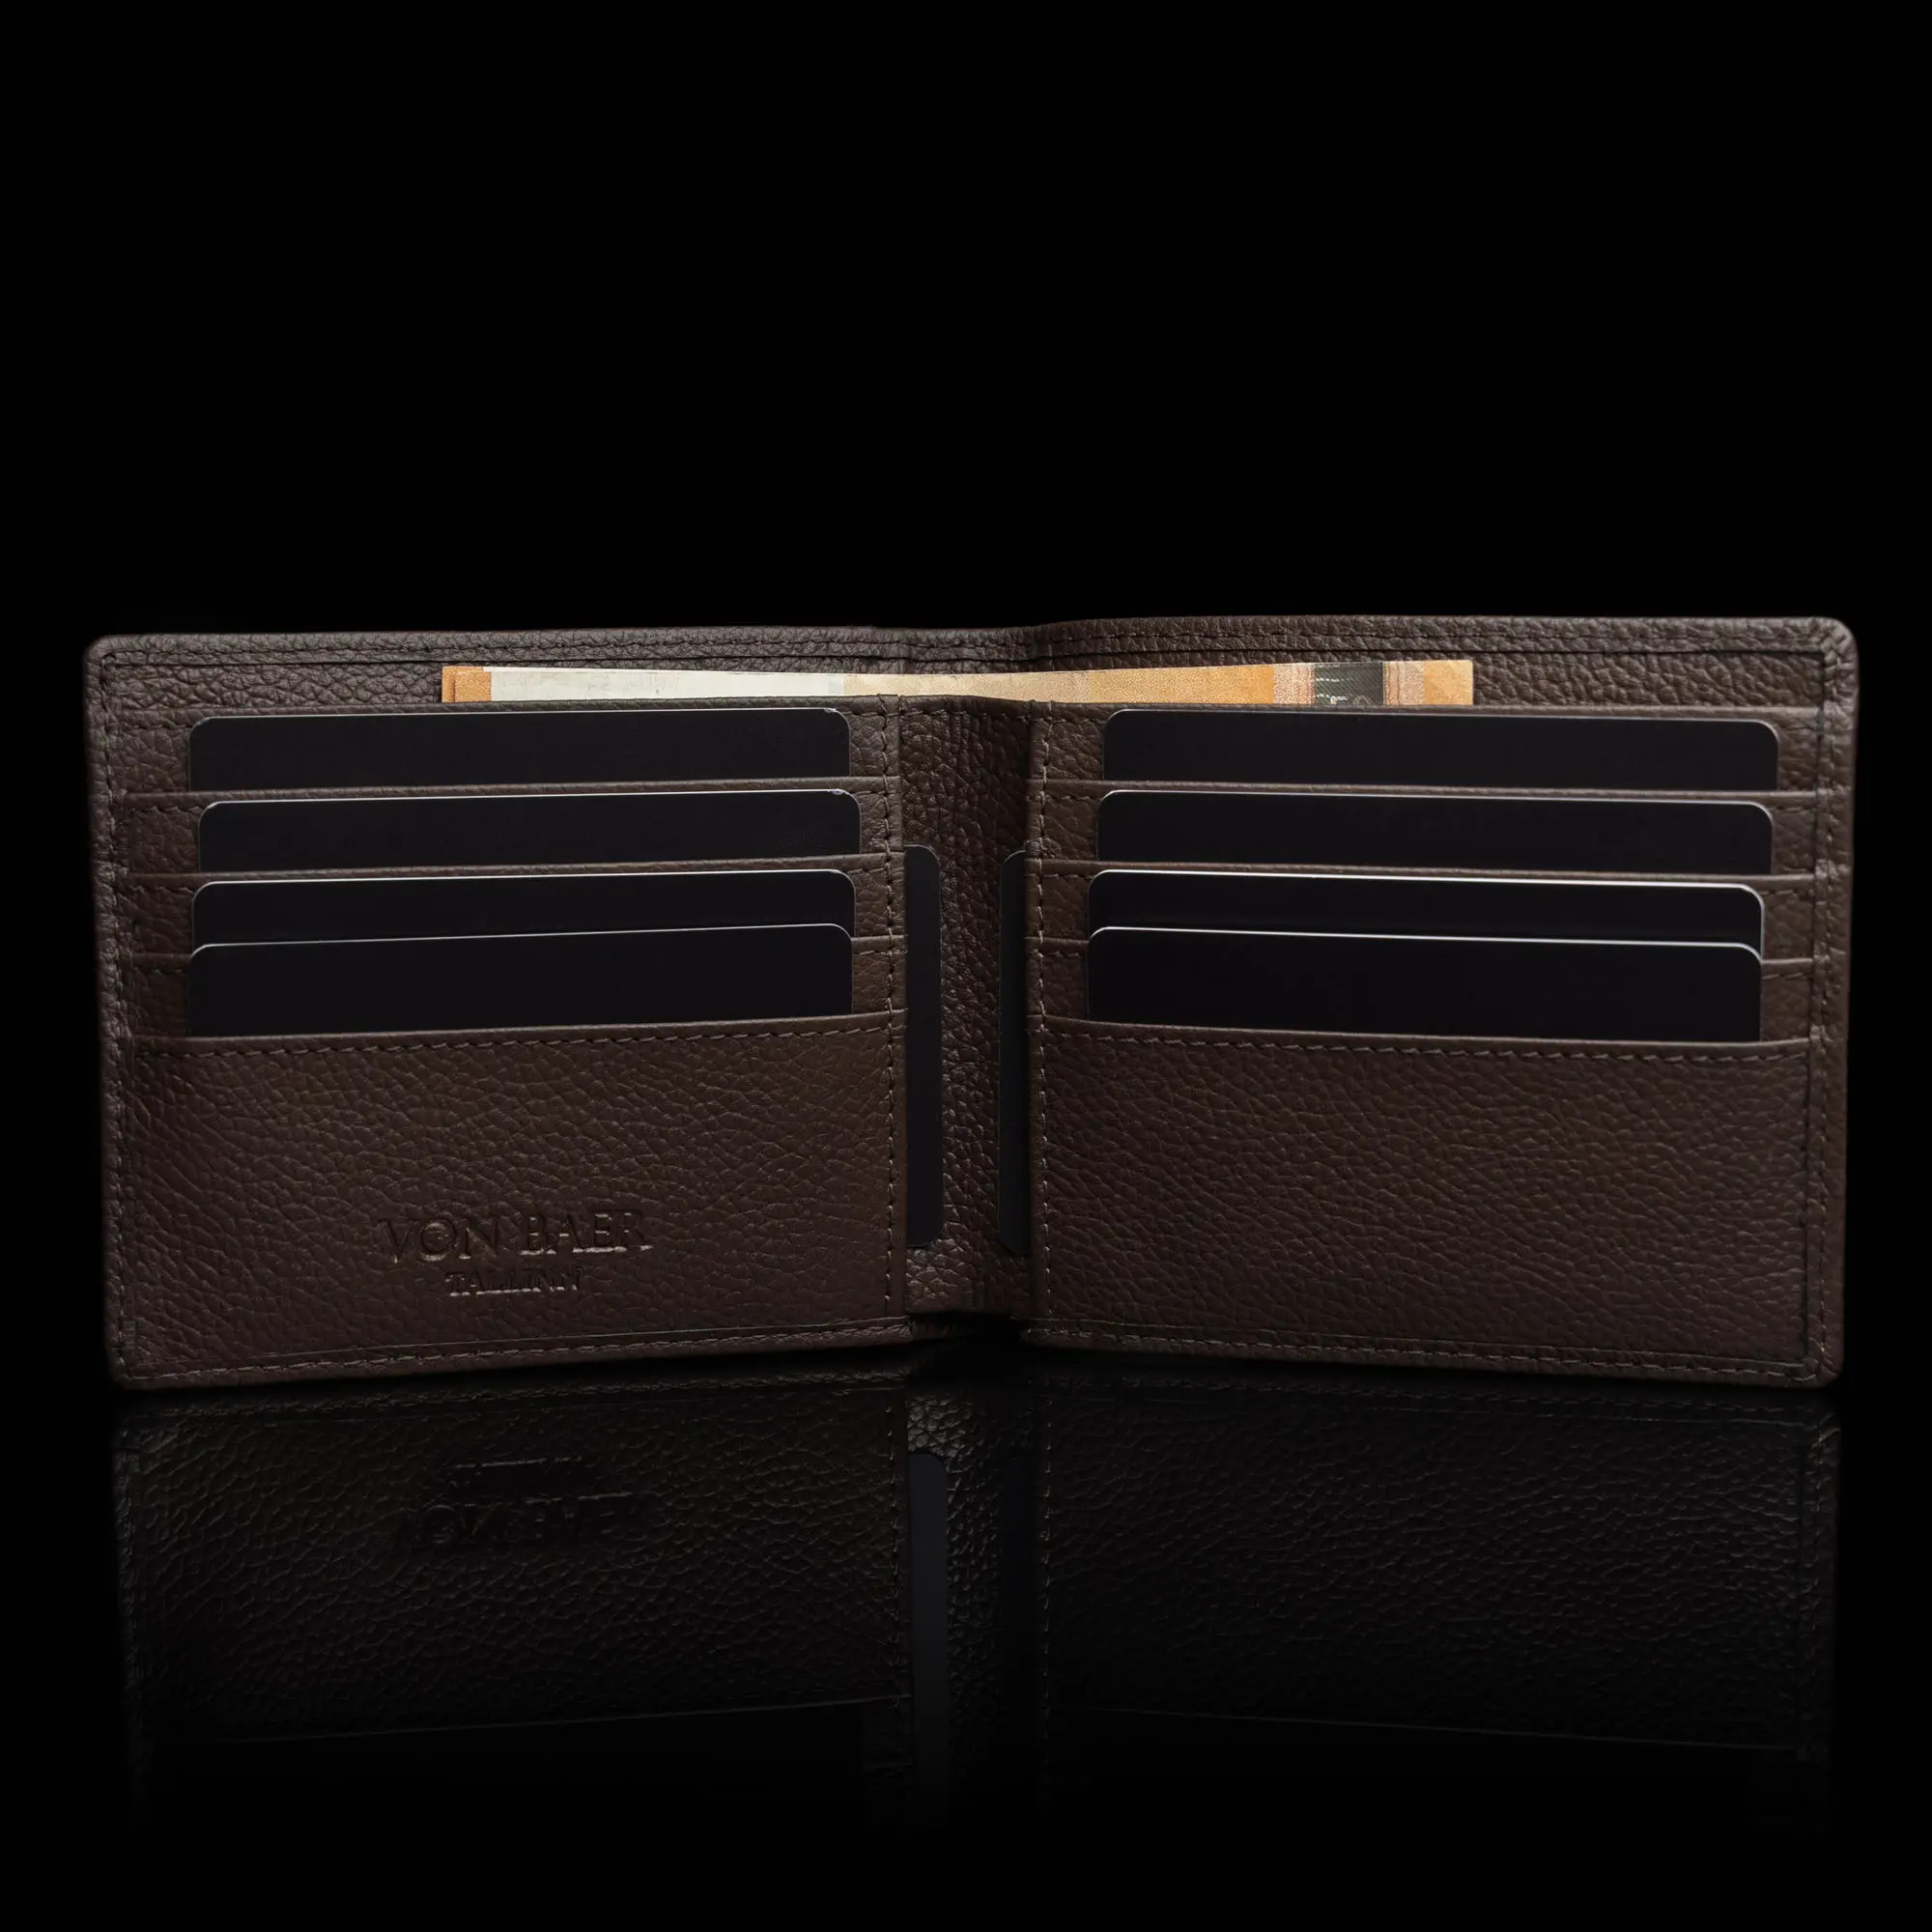 von baer franklin luksuslik premium nahast meste rahakott eesti disain pruun kaardid ja raha taskud